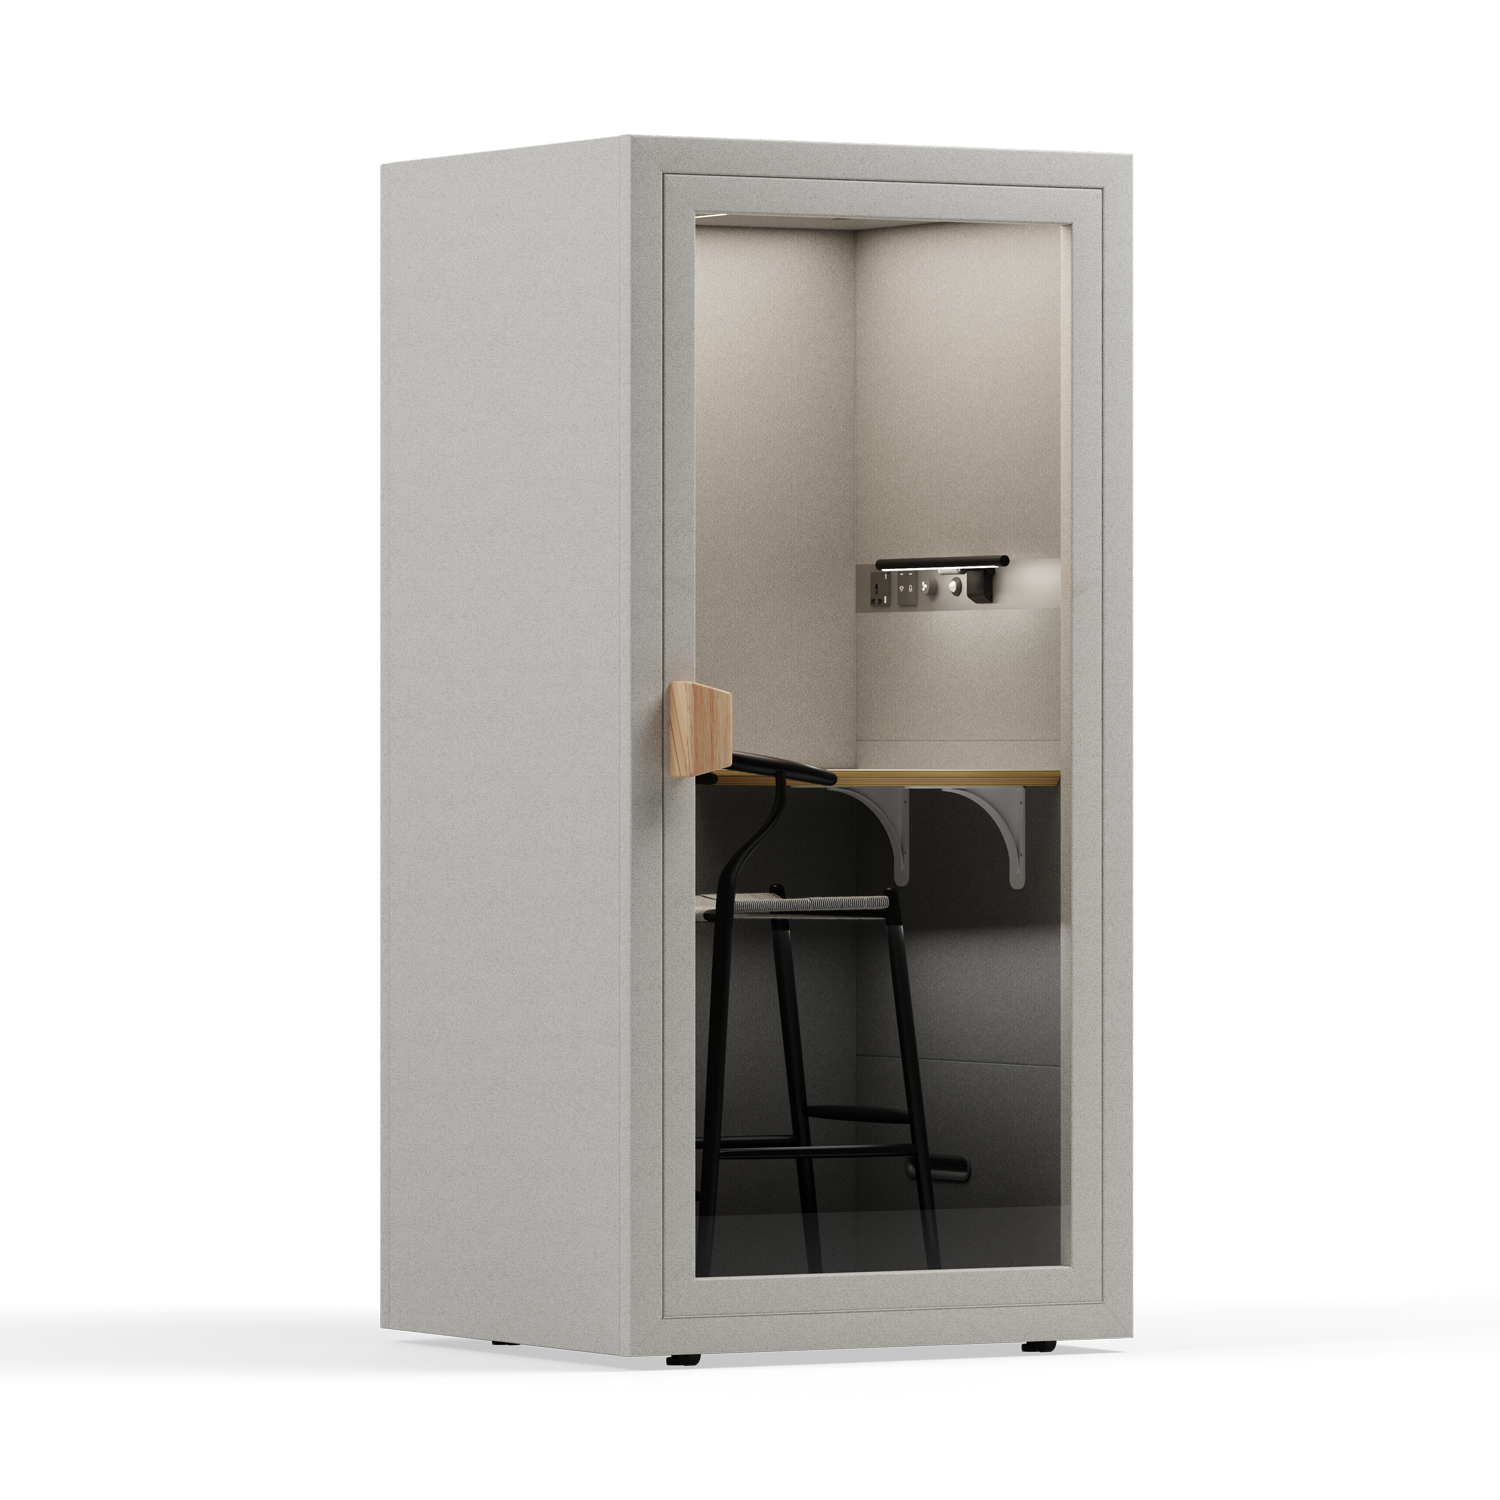 Folio Cabina de Oficina para Una Persona - De PieFolio Pebble Grey / Furniture Set 2